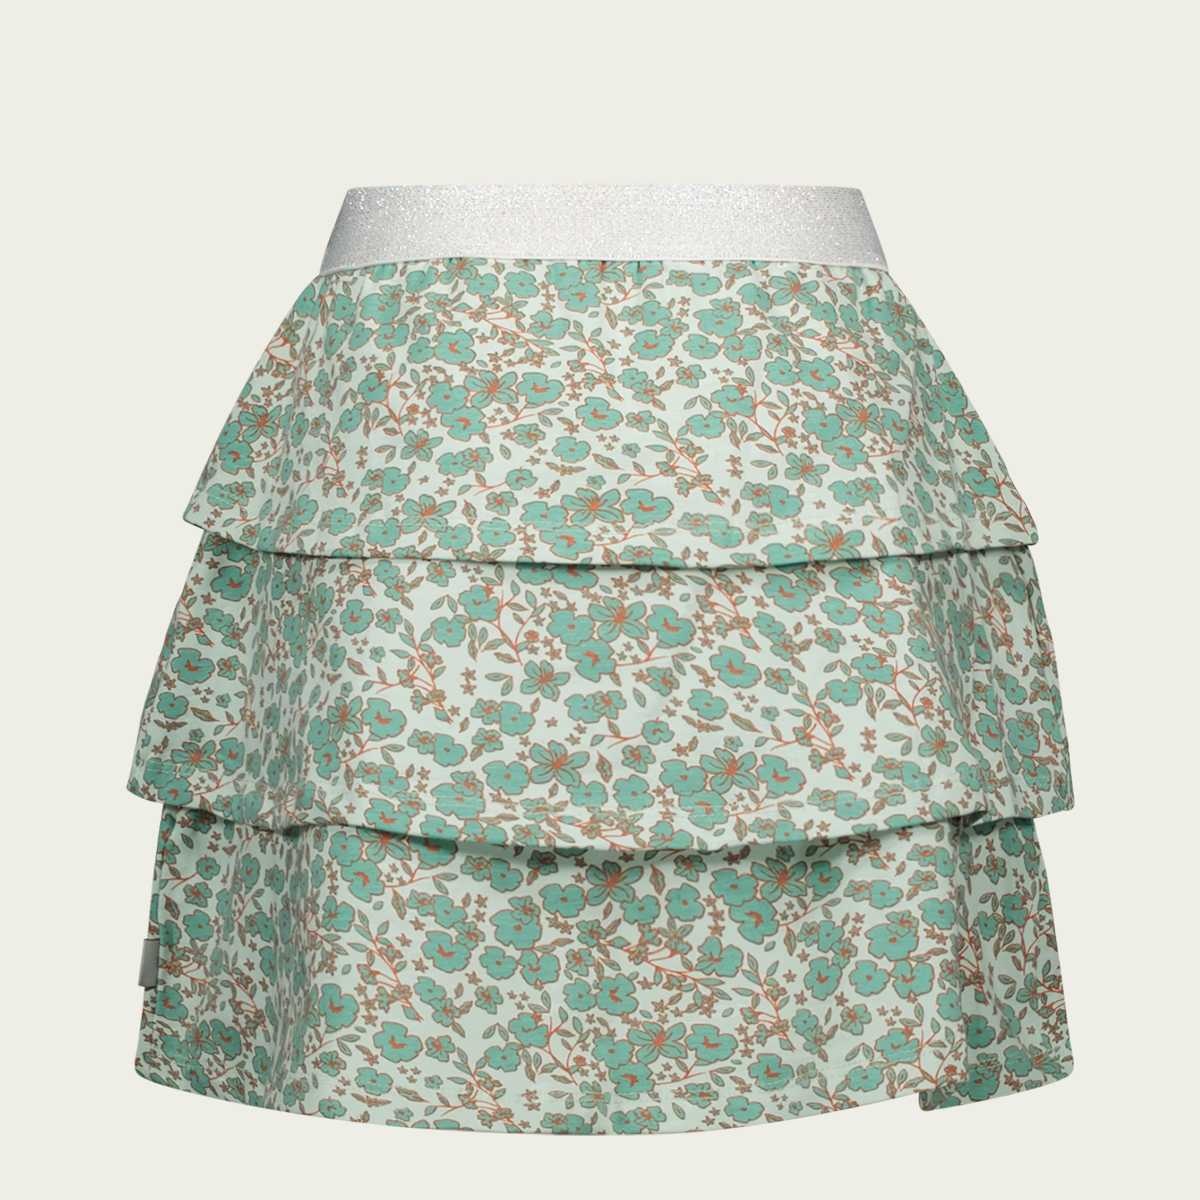 Flower Print Skirt - Mint